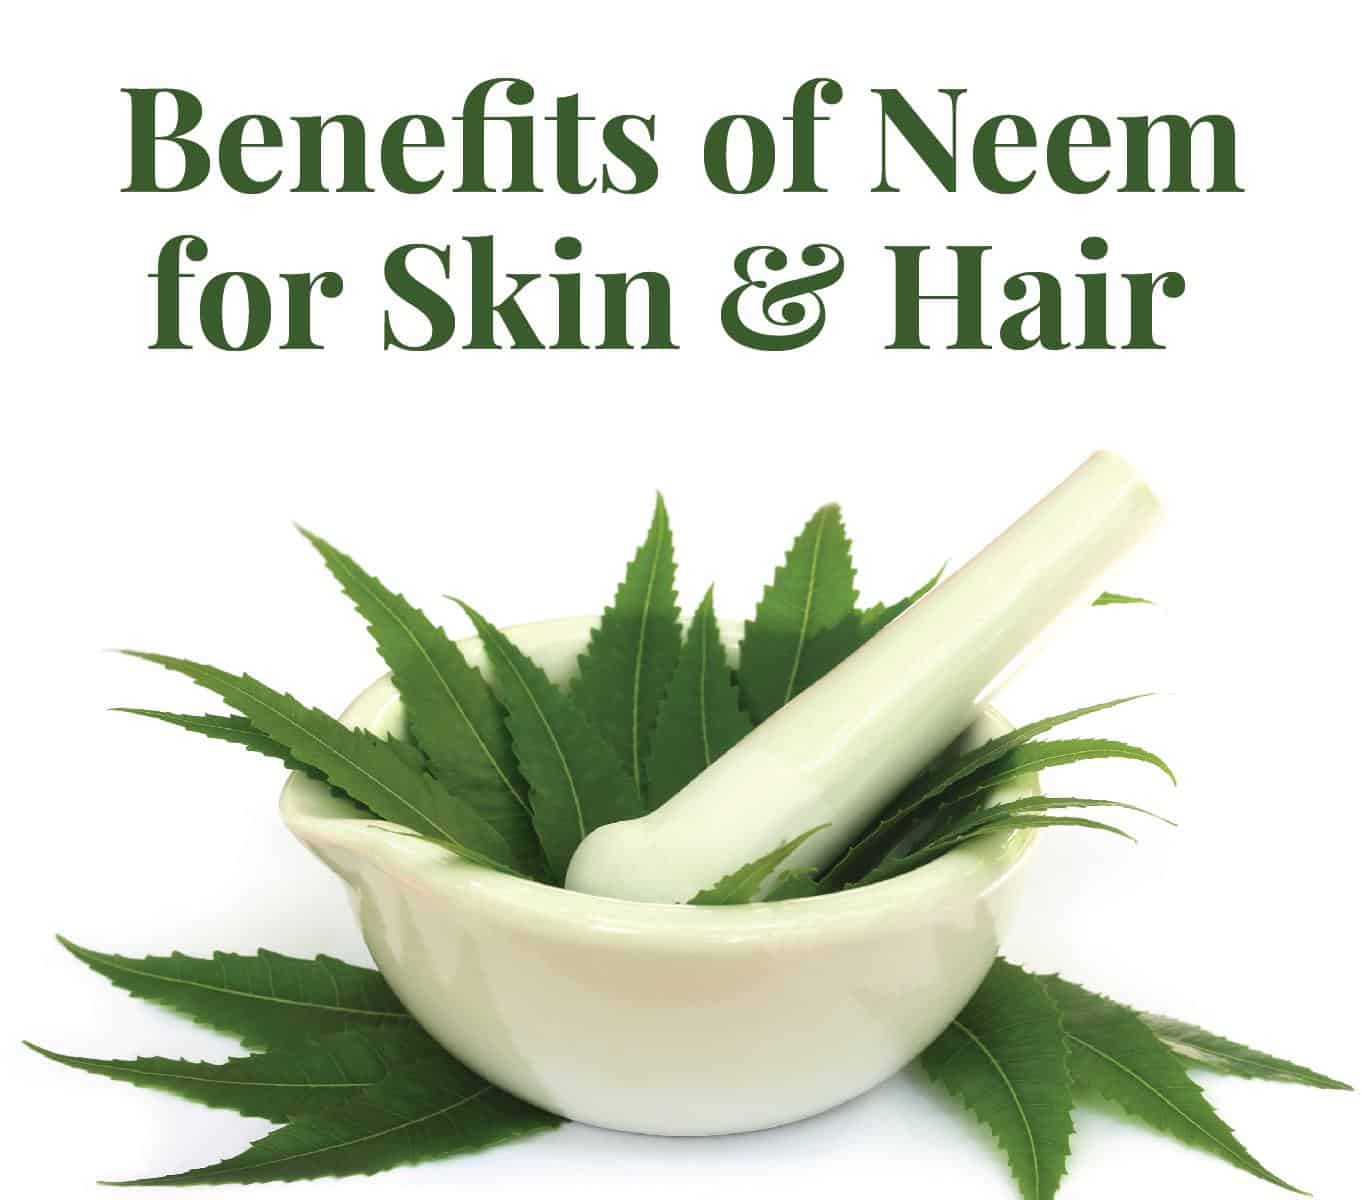 Neem: An Essential herb for Skin & Hair